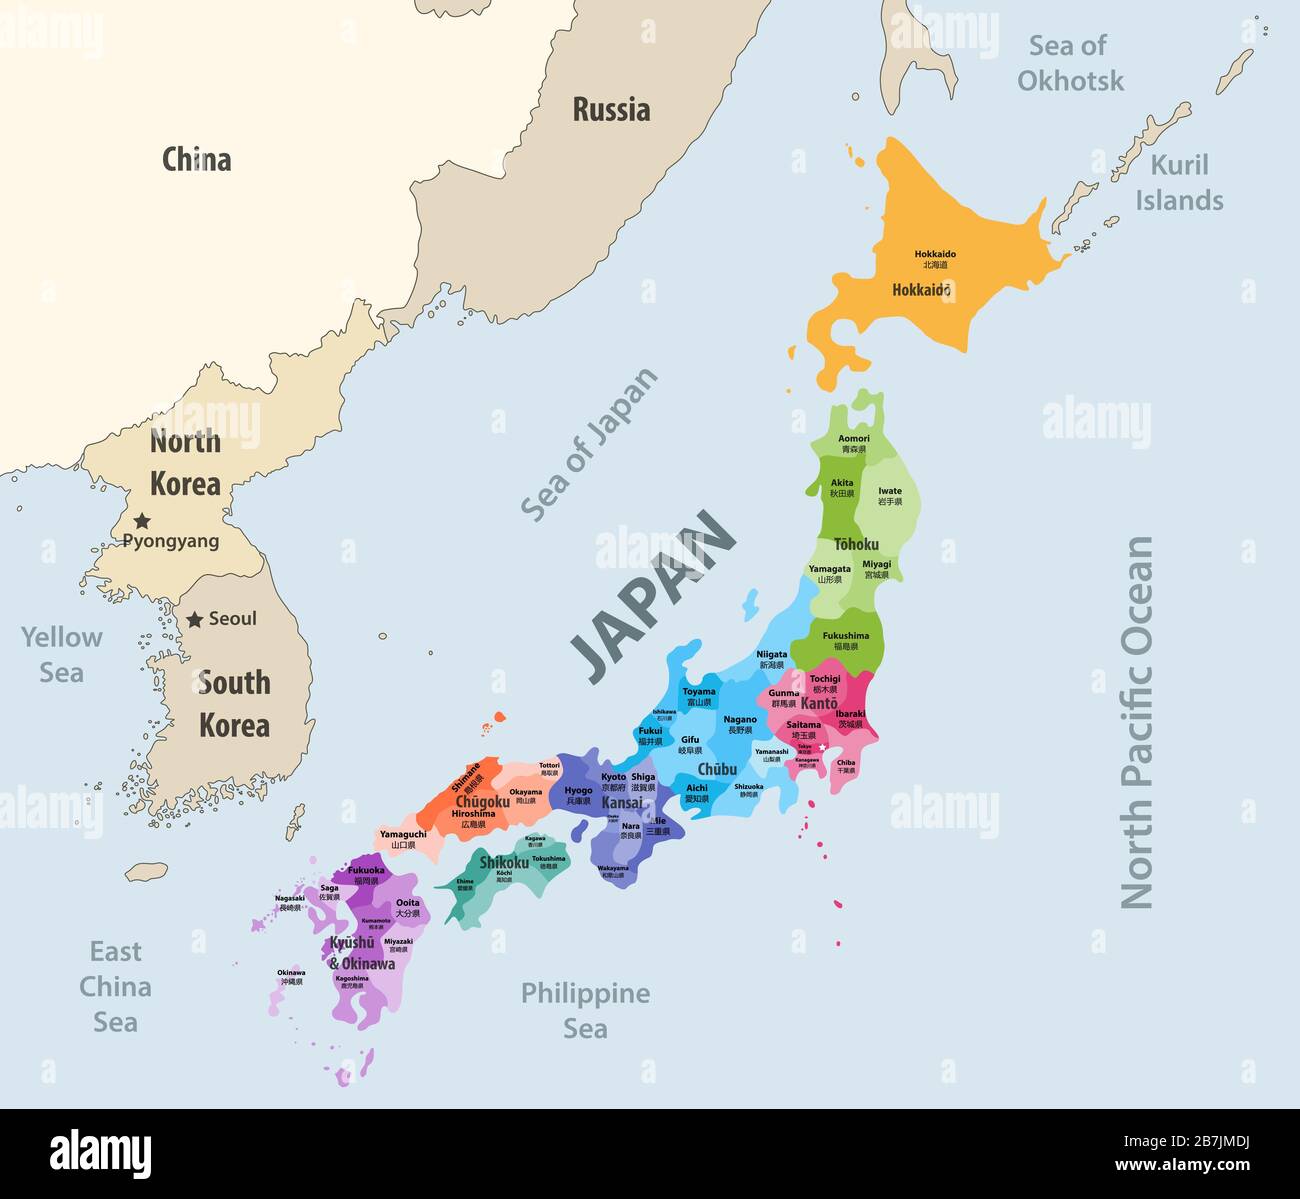 Les préfectures japonaises (les noms japonais donnent entre parenthèses) la carte vectorielle colorée est des régions avec les pays et territoires voisins Illustration de Vecteur